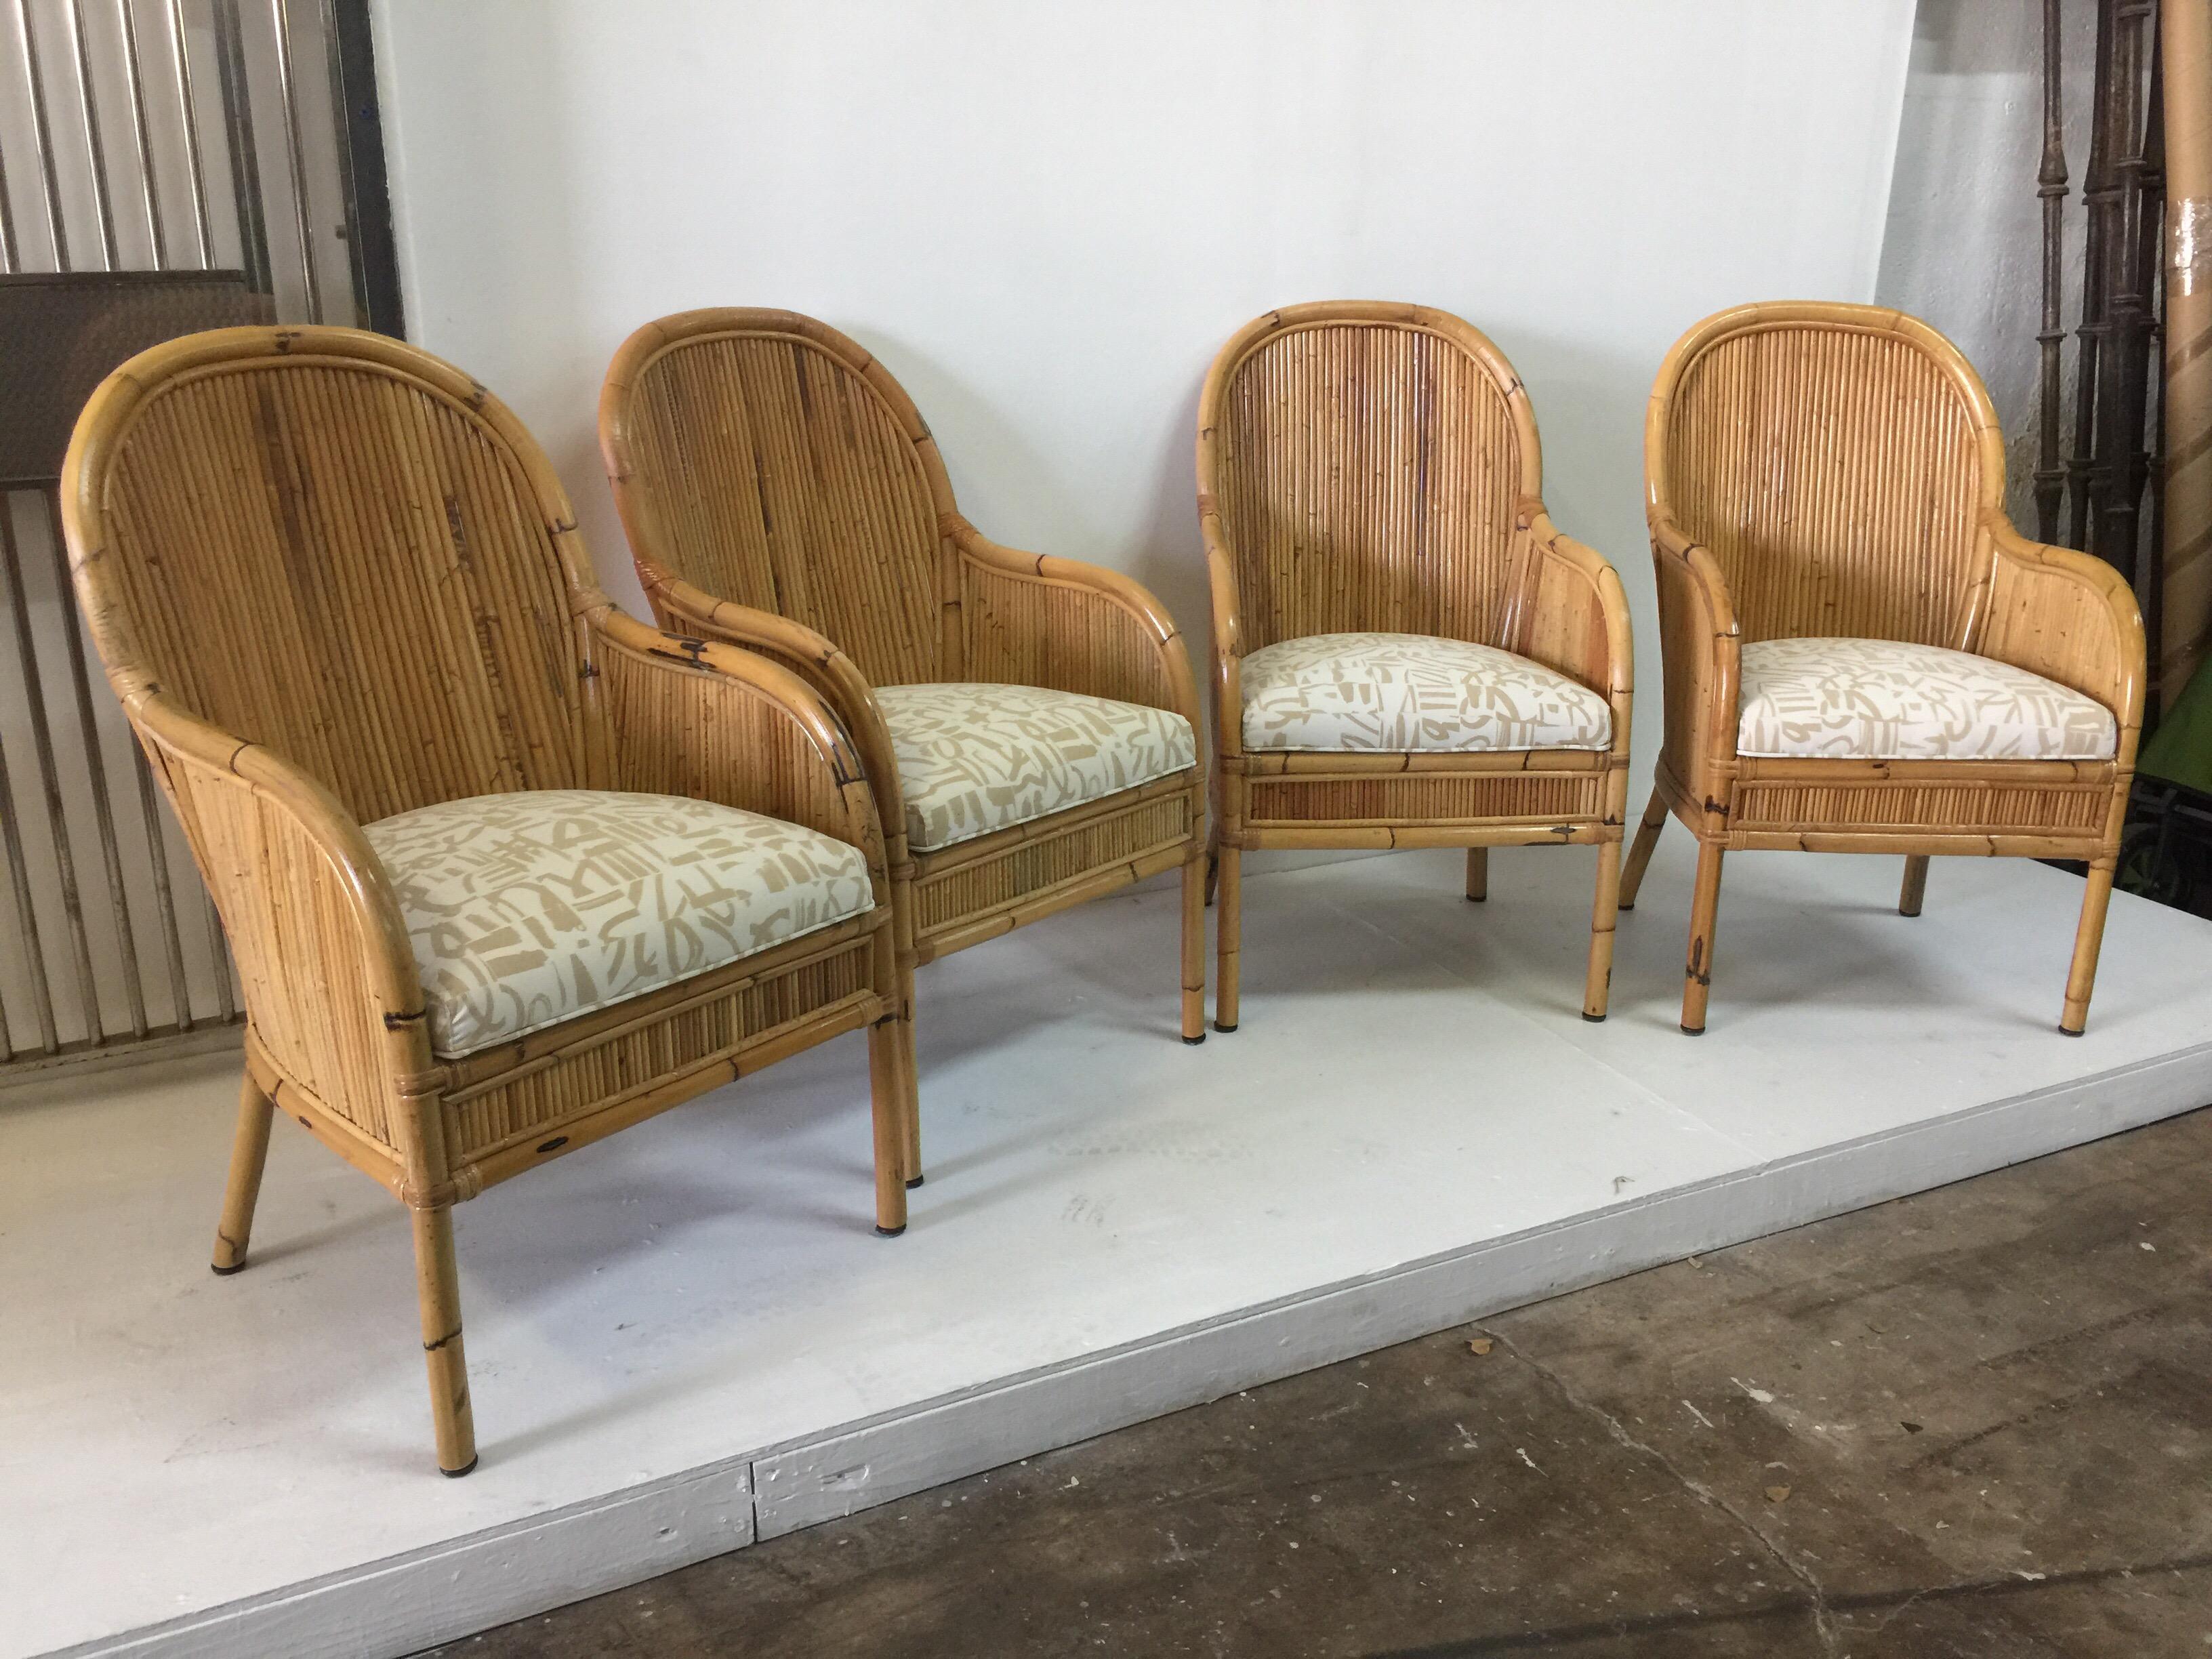 Coussins d'assise enveloppants en bambou et recouverts d'un joli motif imprimé. Ces chaises sont marquées d'une étiquette métallique sur le dessous.